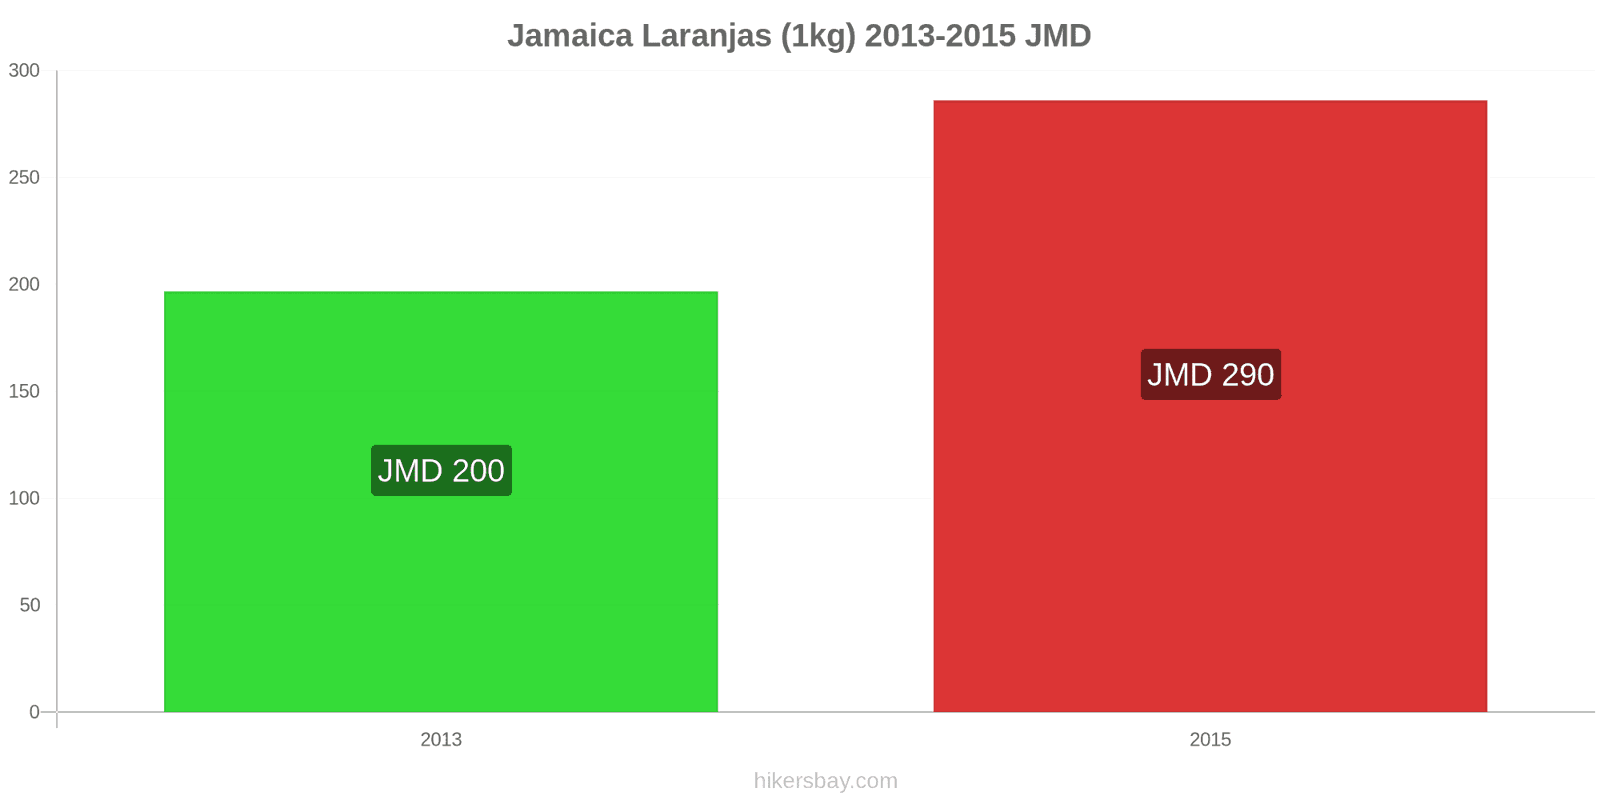 Jamaica mudanças de preços Laranjas (1kg) hikersbay.com